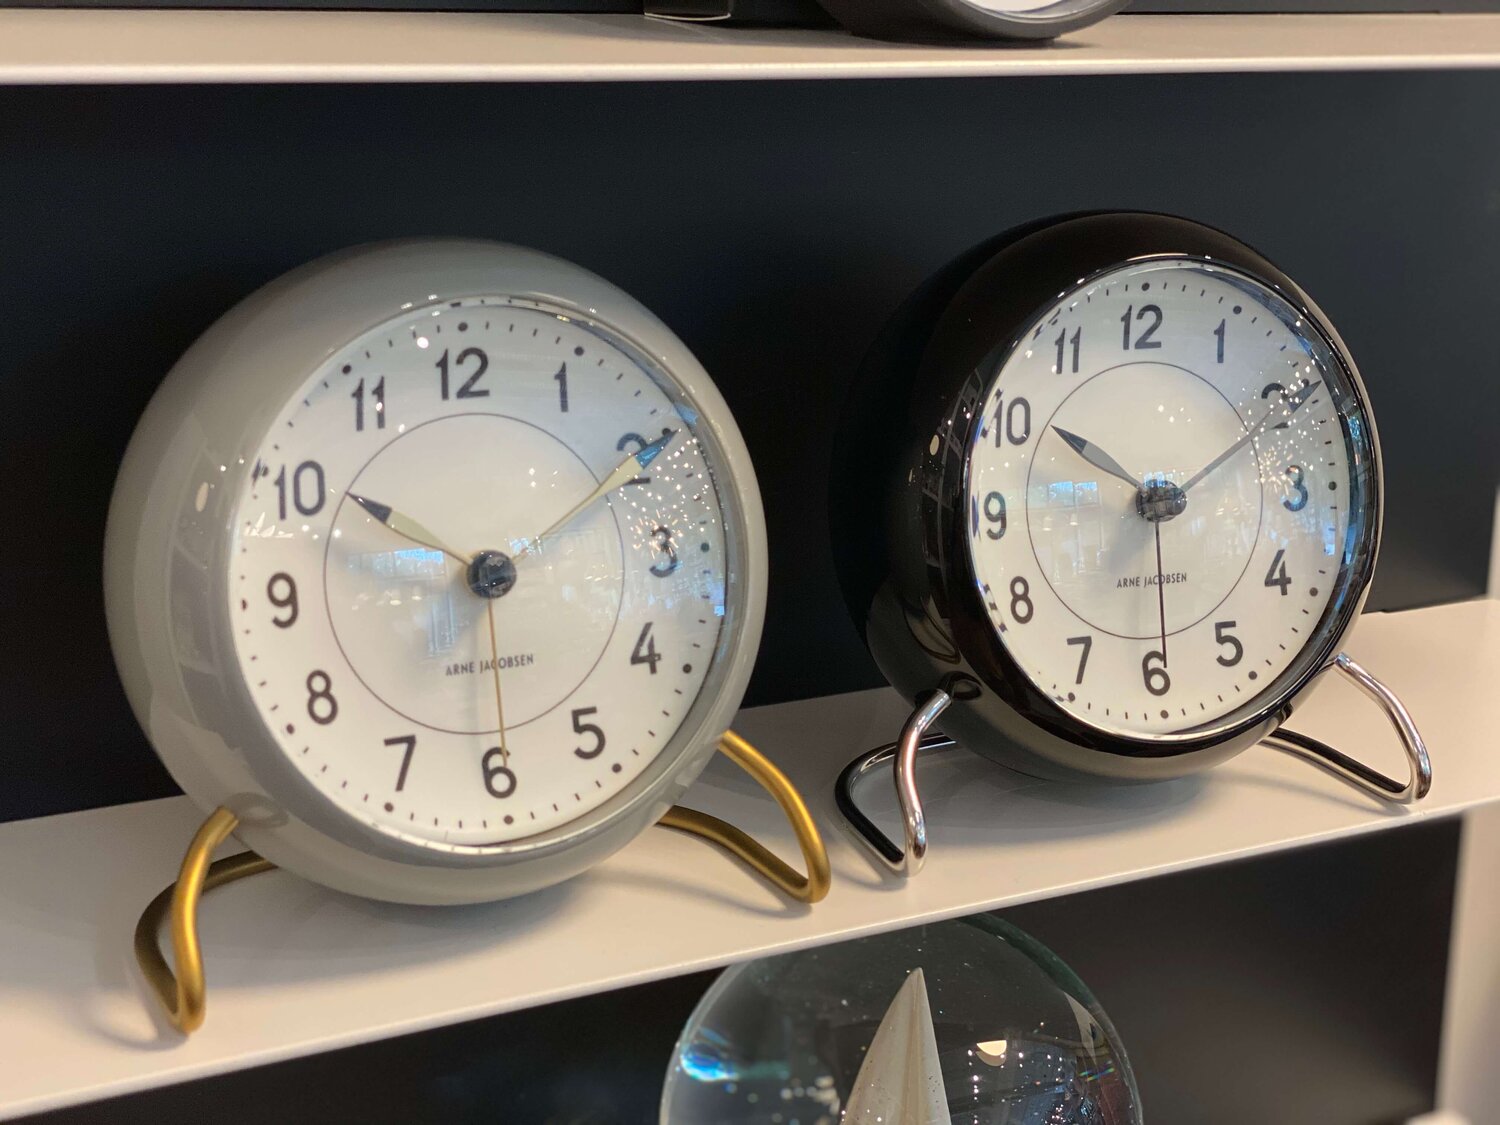 Alarm Clock — design solutions